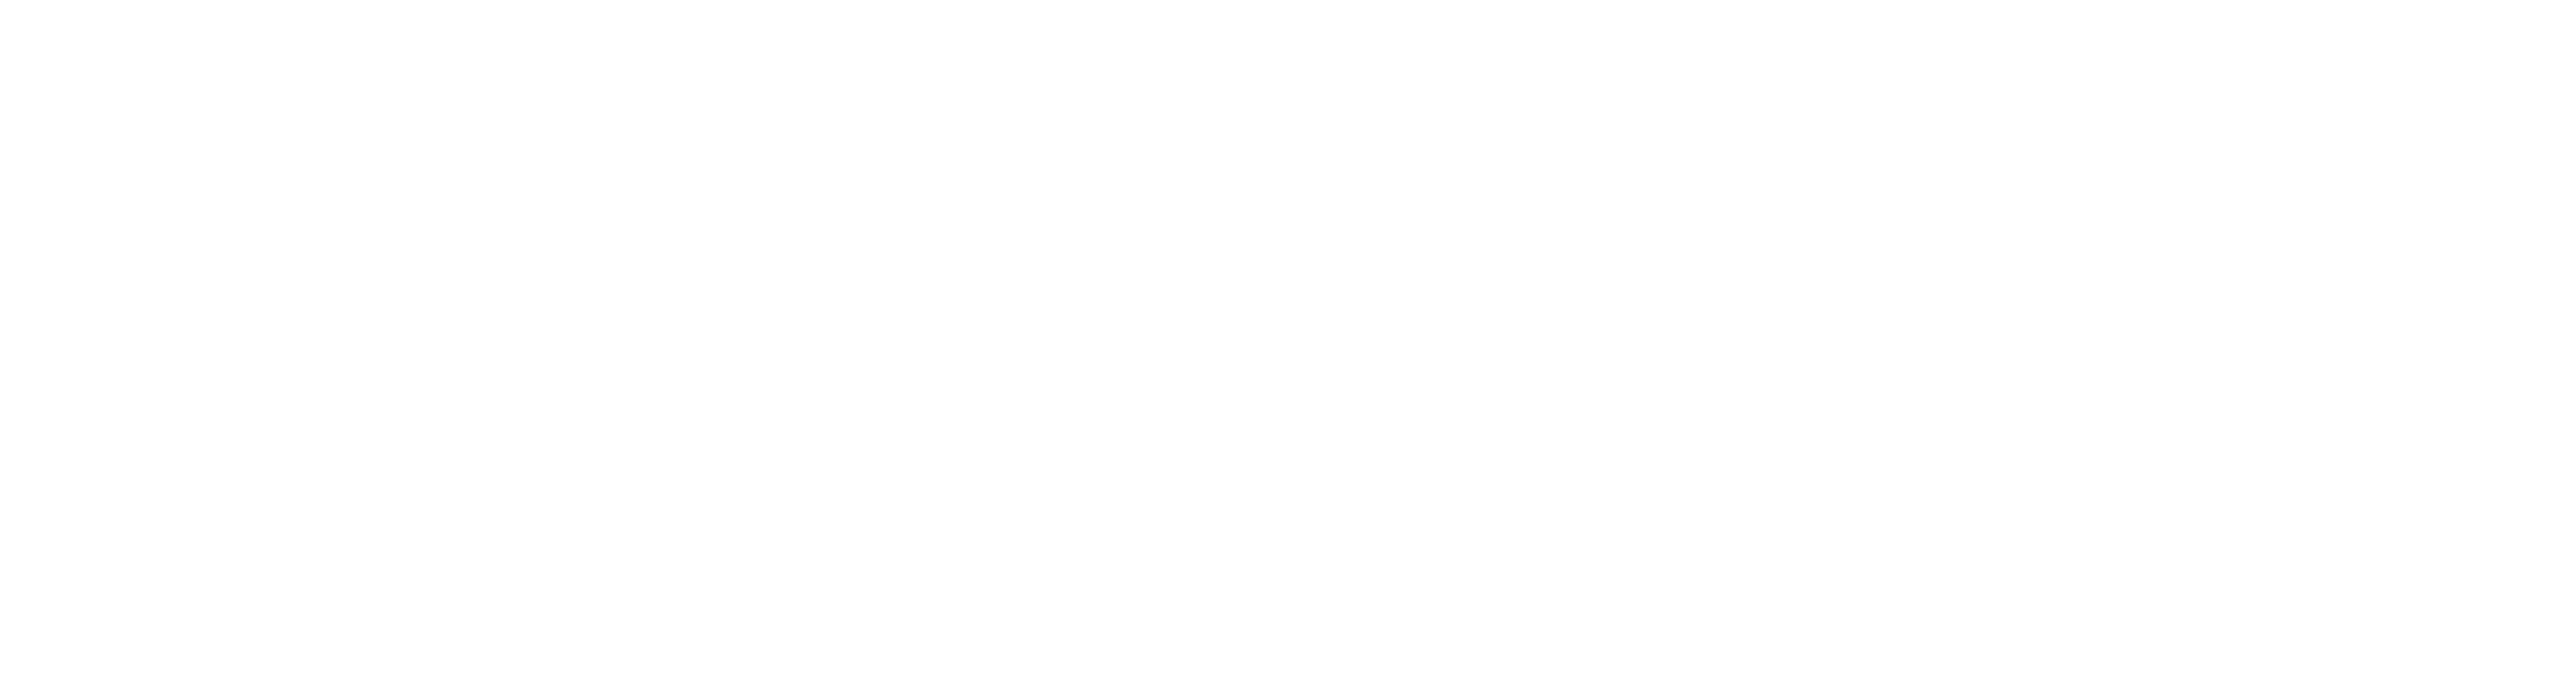 KOTAL MAHINDRA BANK